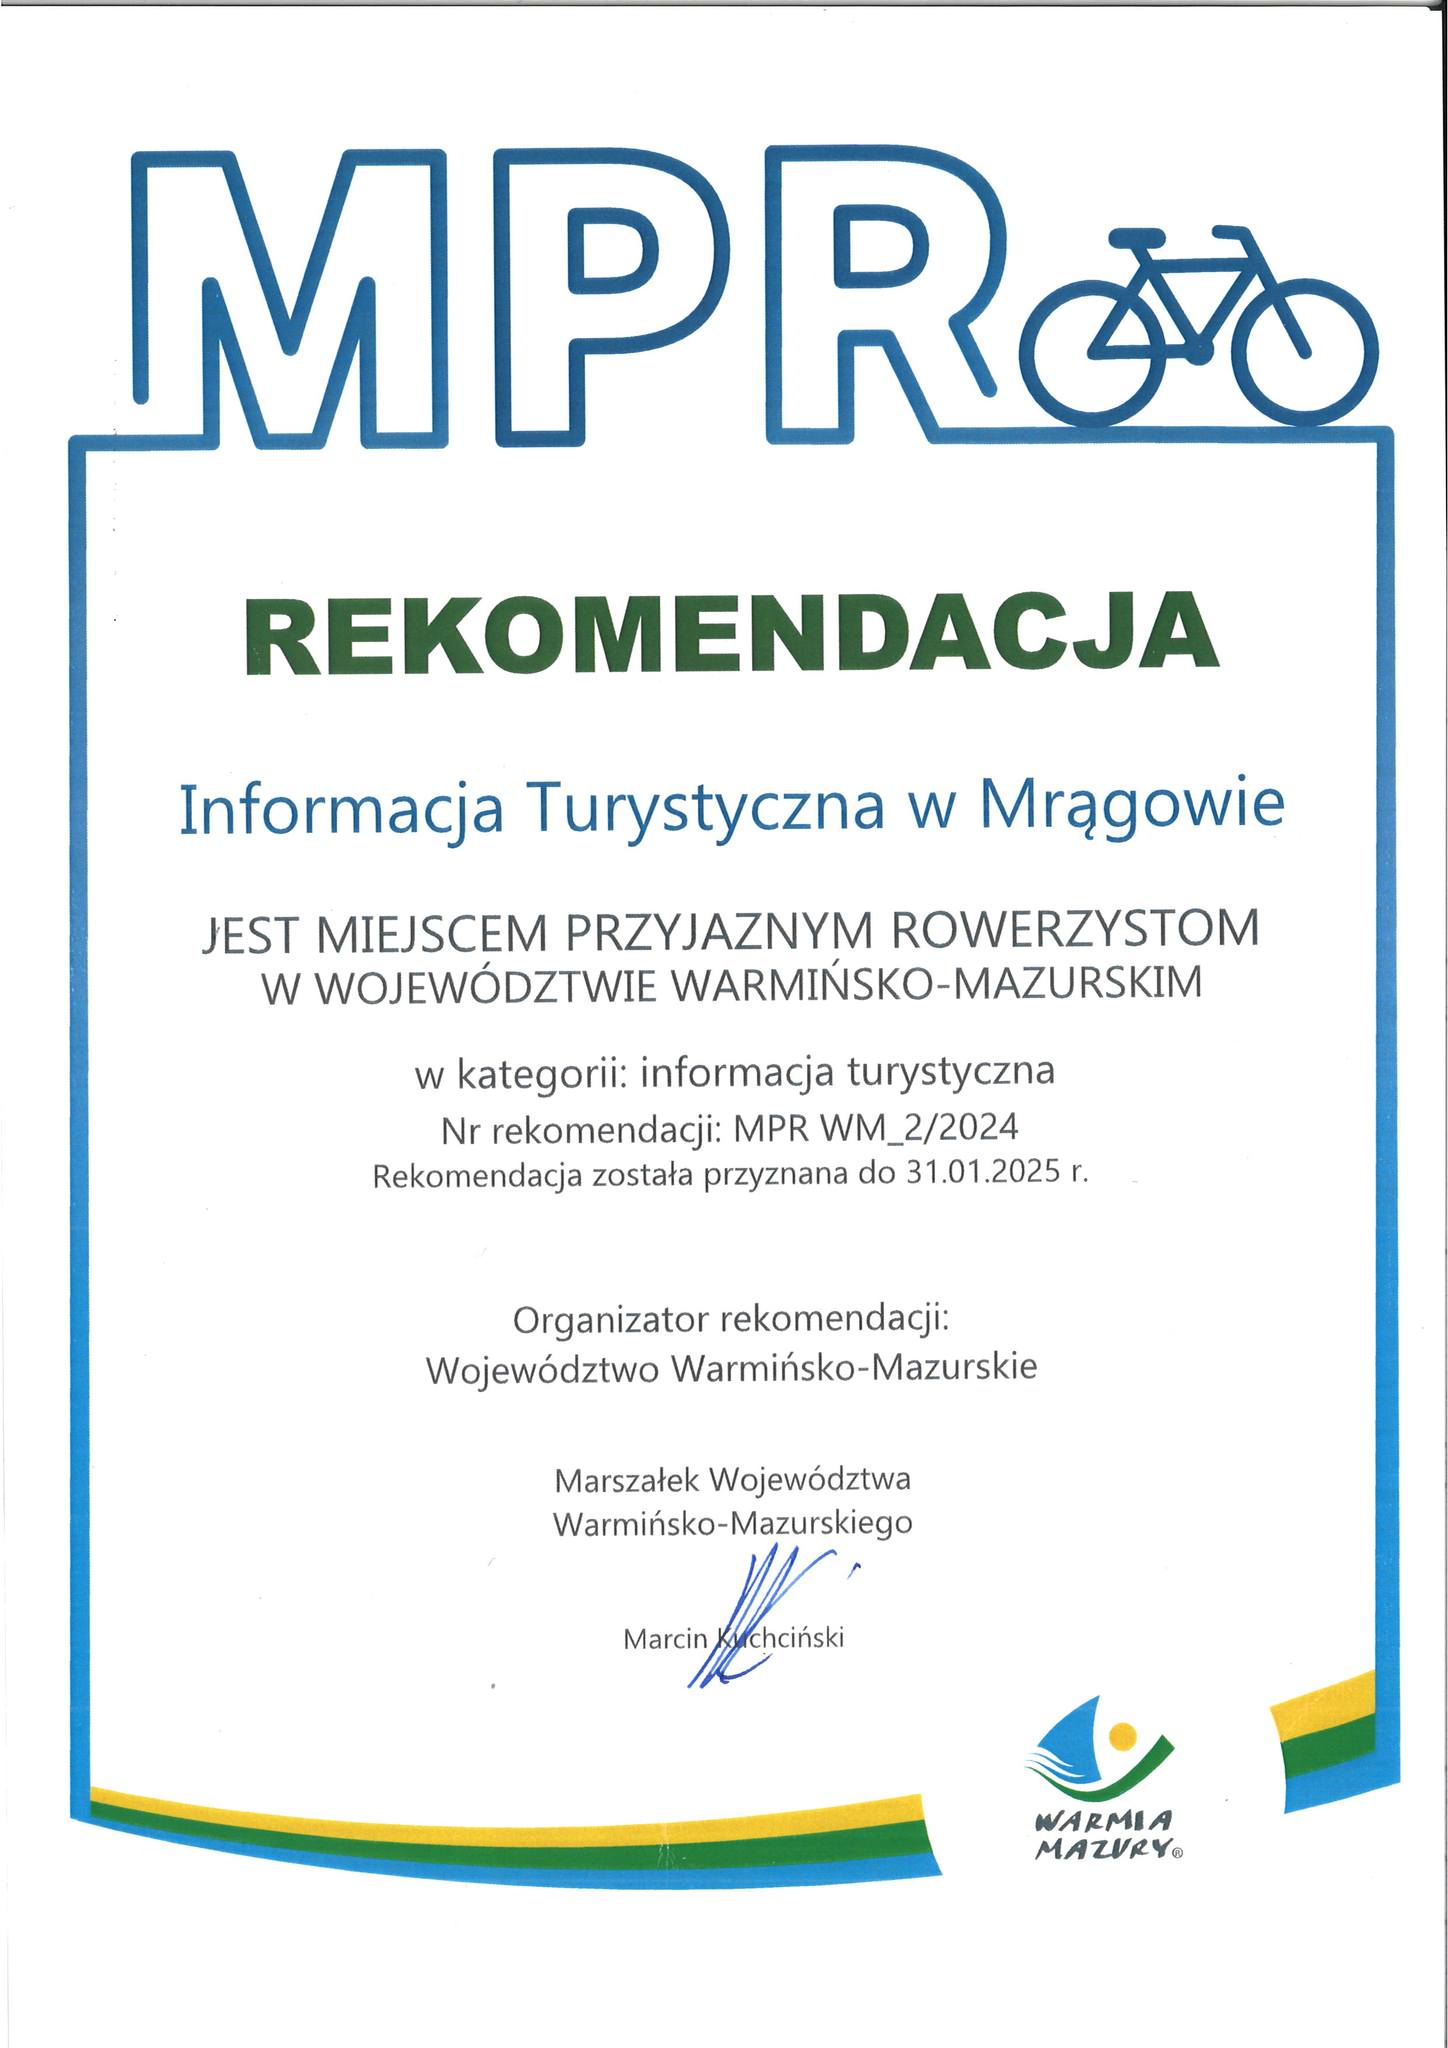 Przedłużono Rekomendację Miejsca Przyjaznego Rowerzystom dla Informacji Turystycznej w Mrągowie